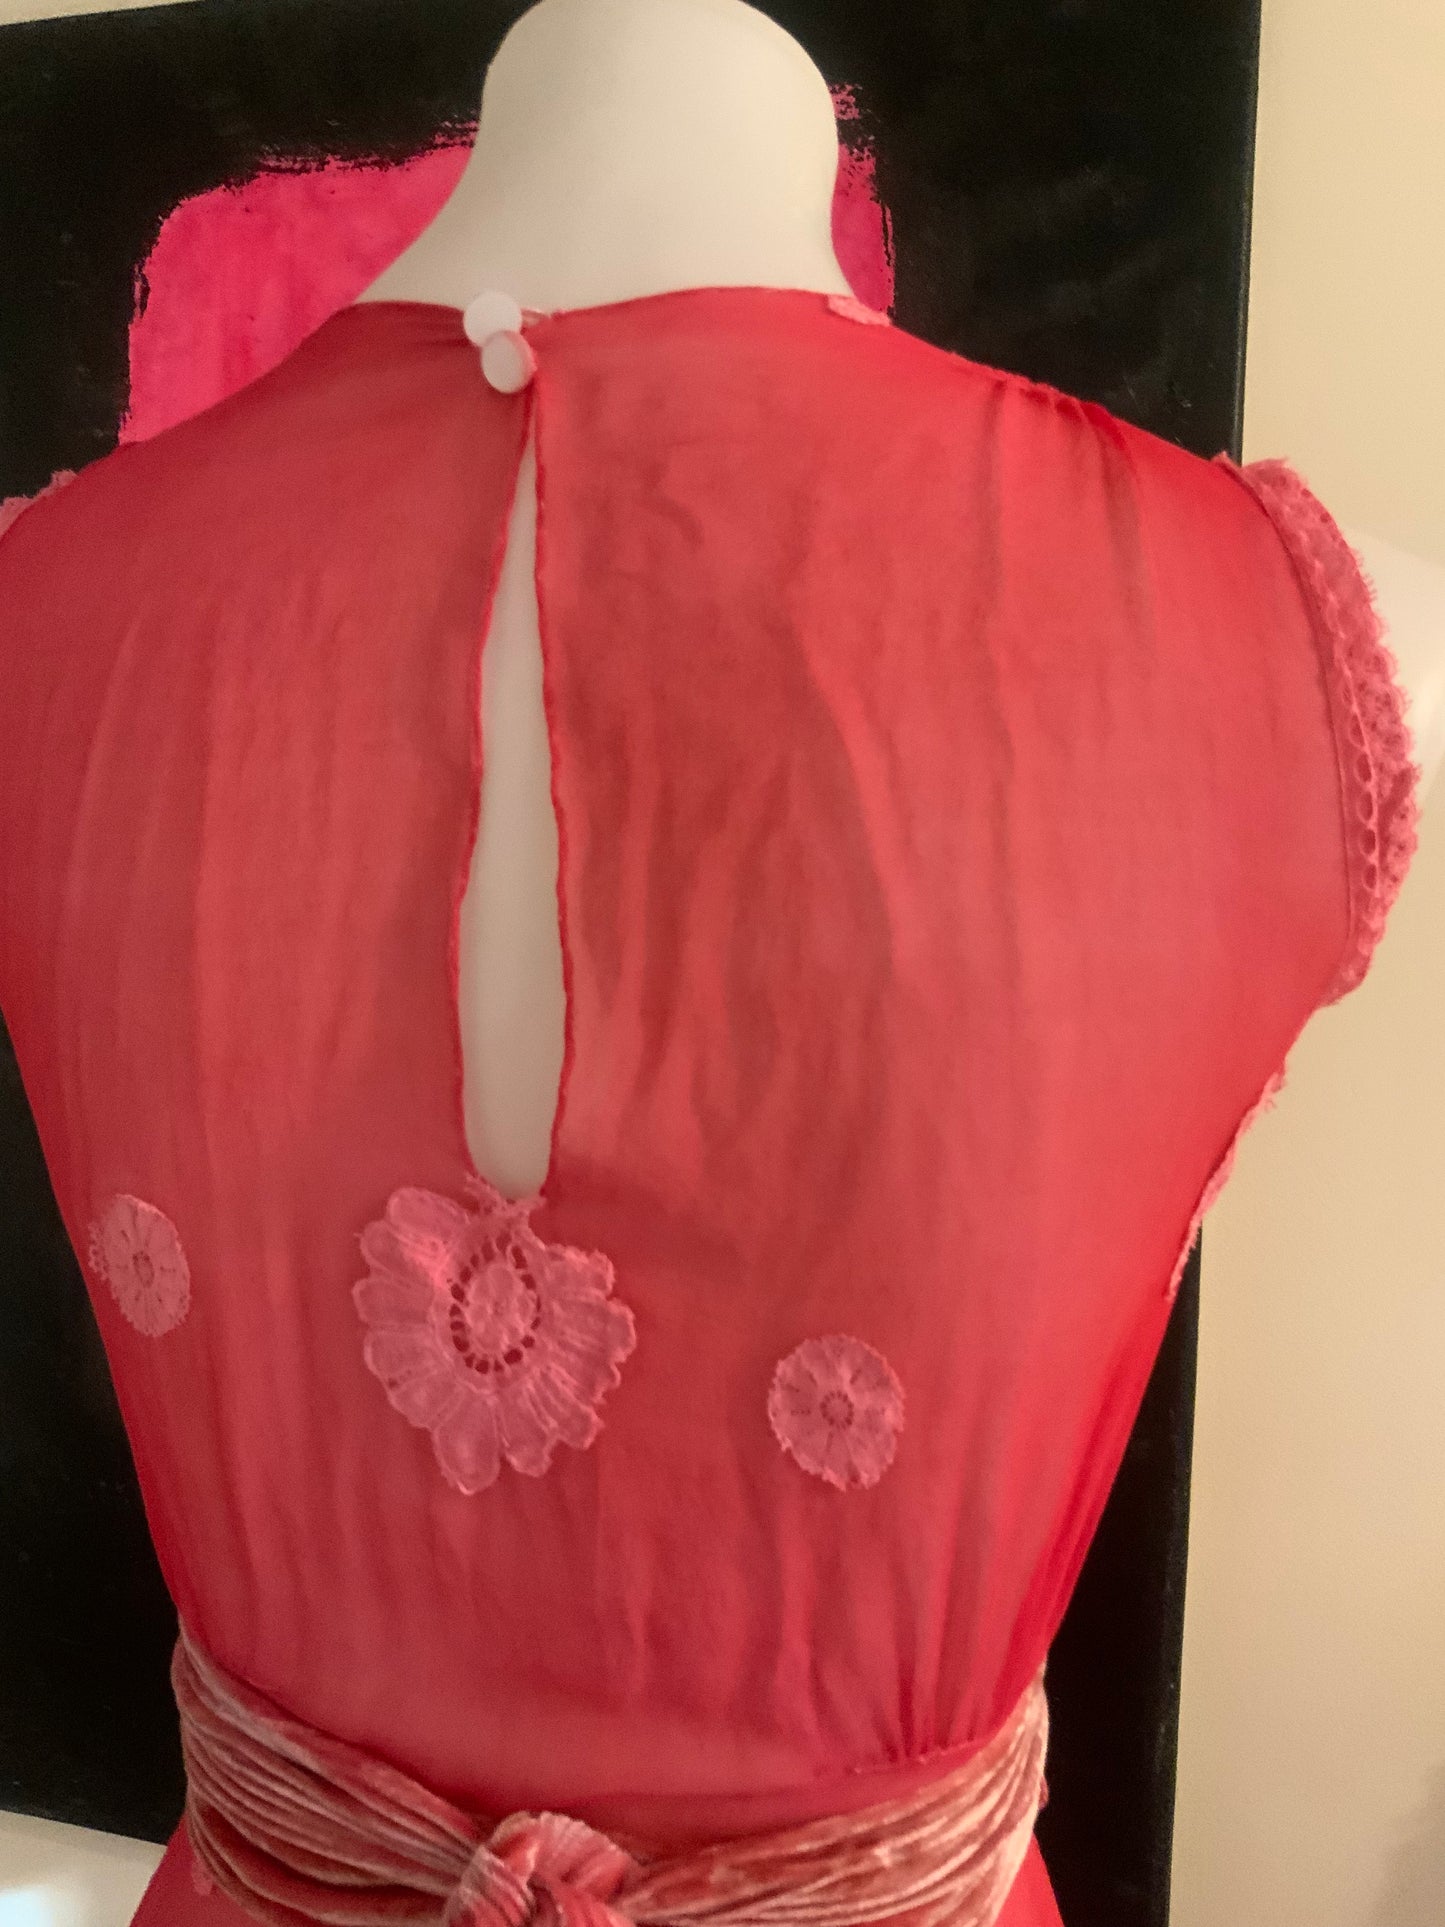 Hand Dyed Pink Chiffon Dress - 50s